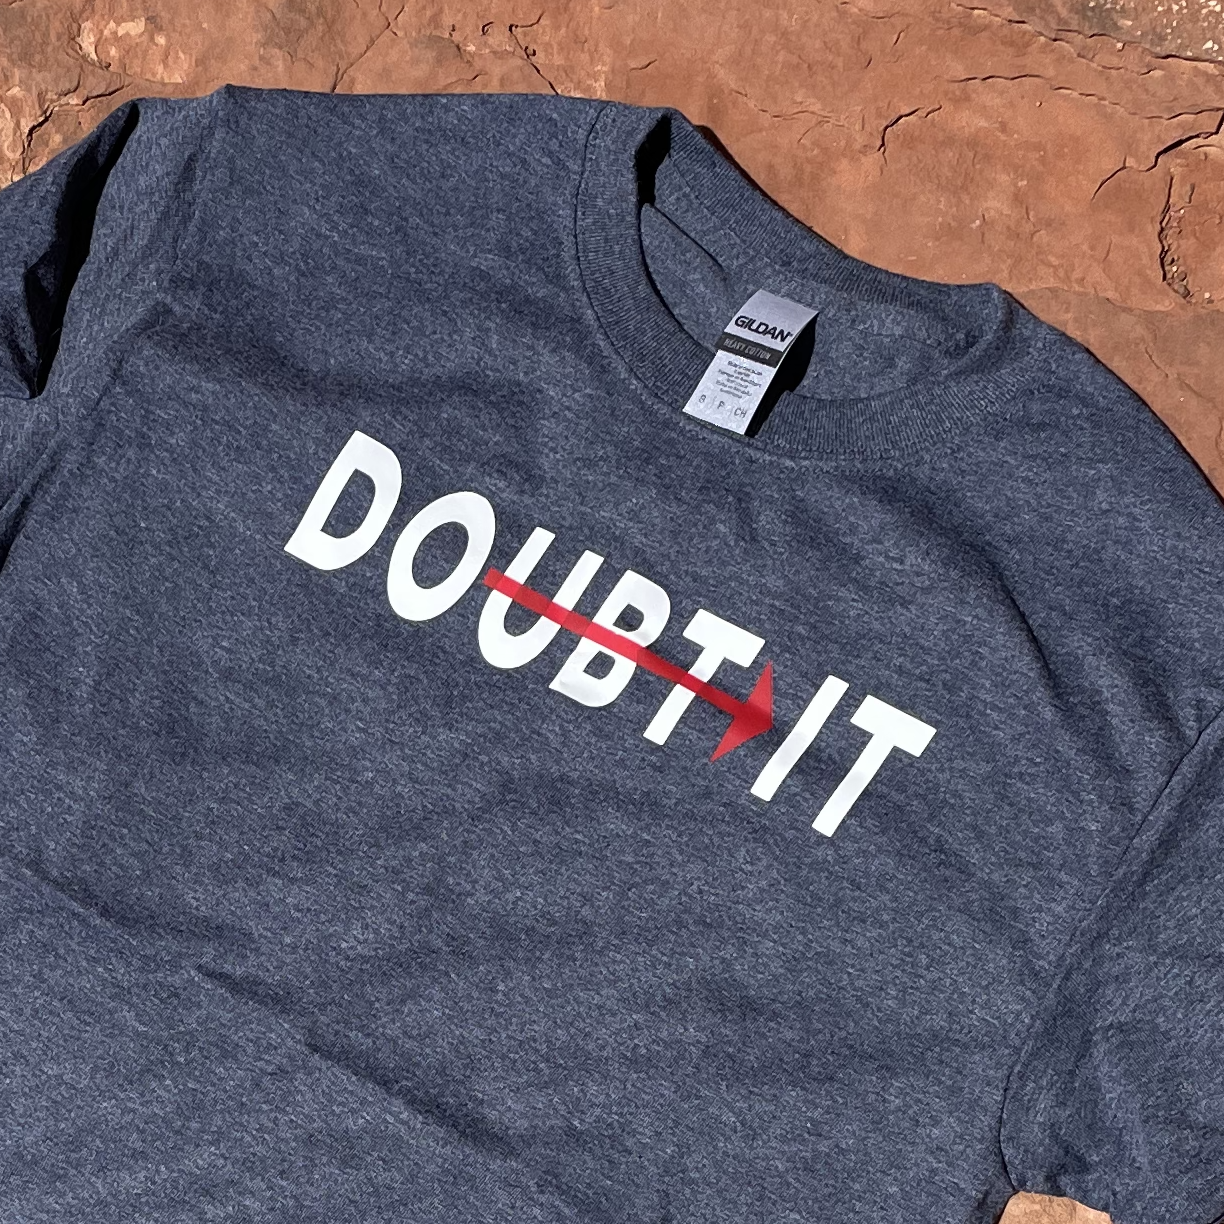 Don't Doubt It - Do It T-shirt